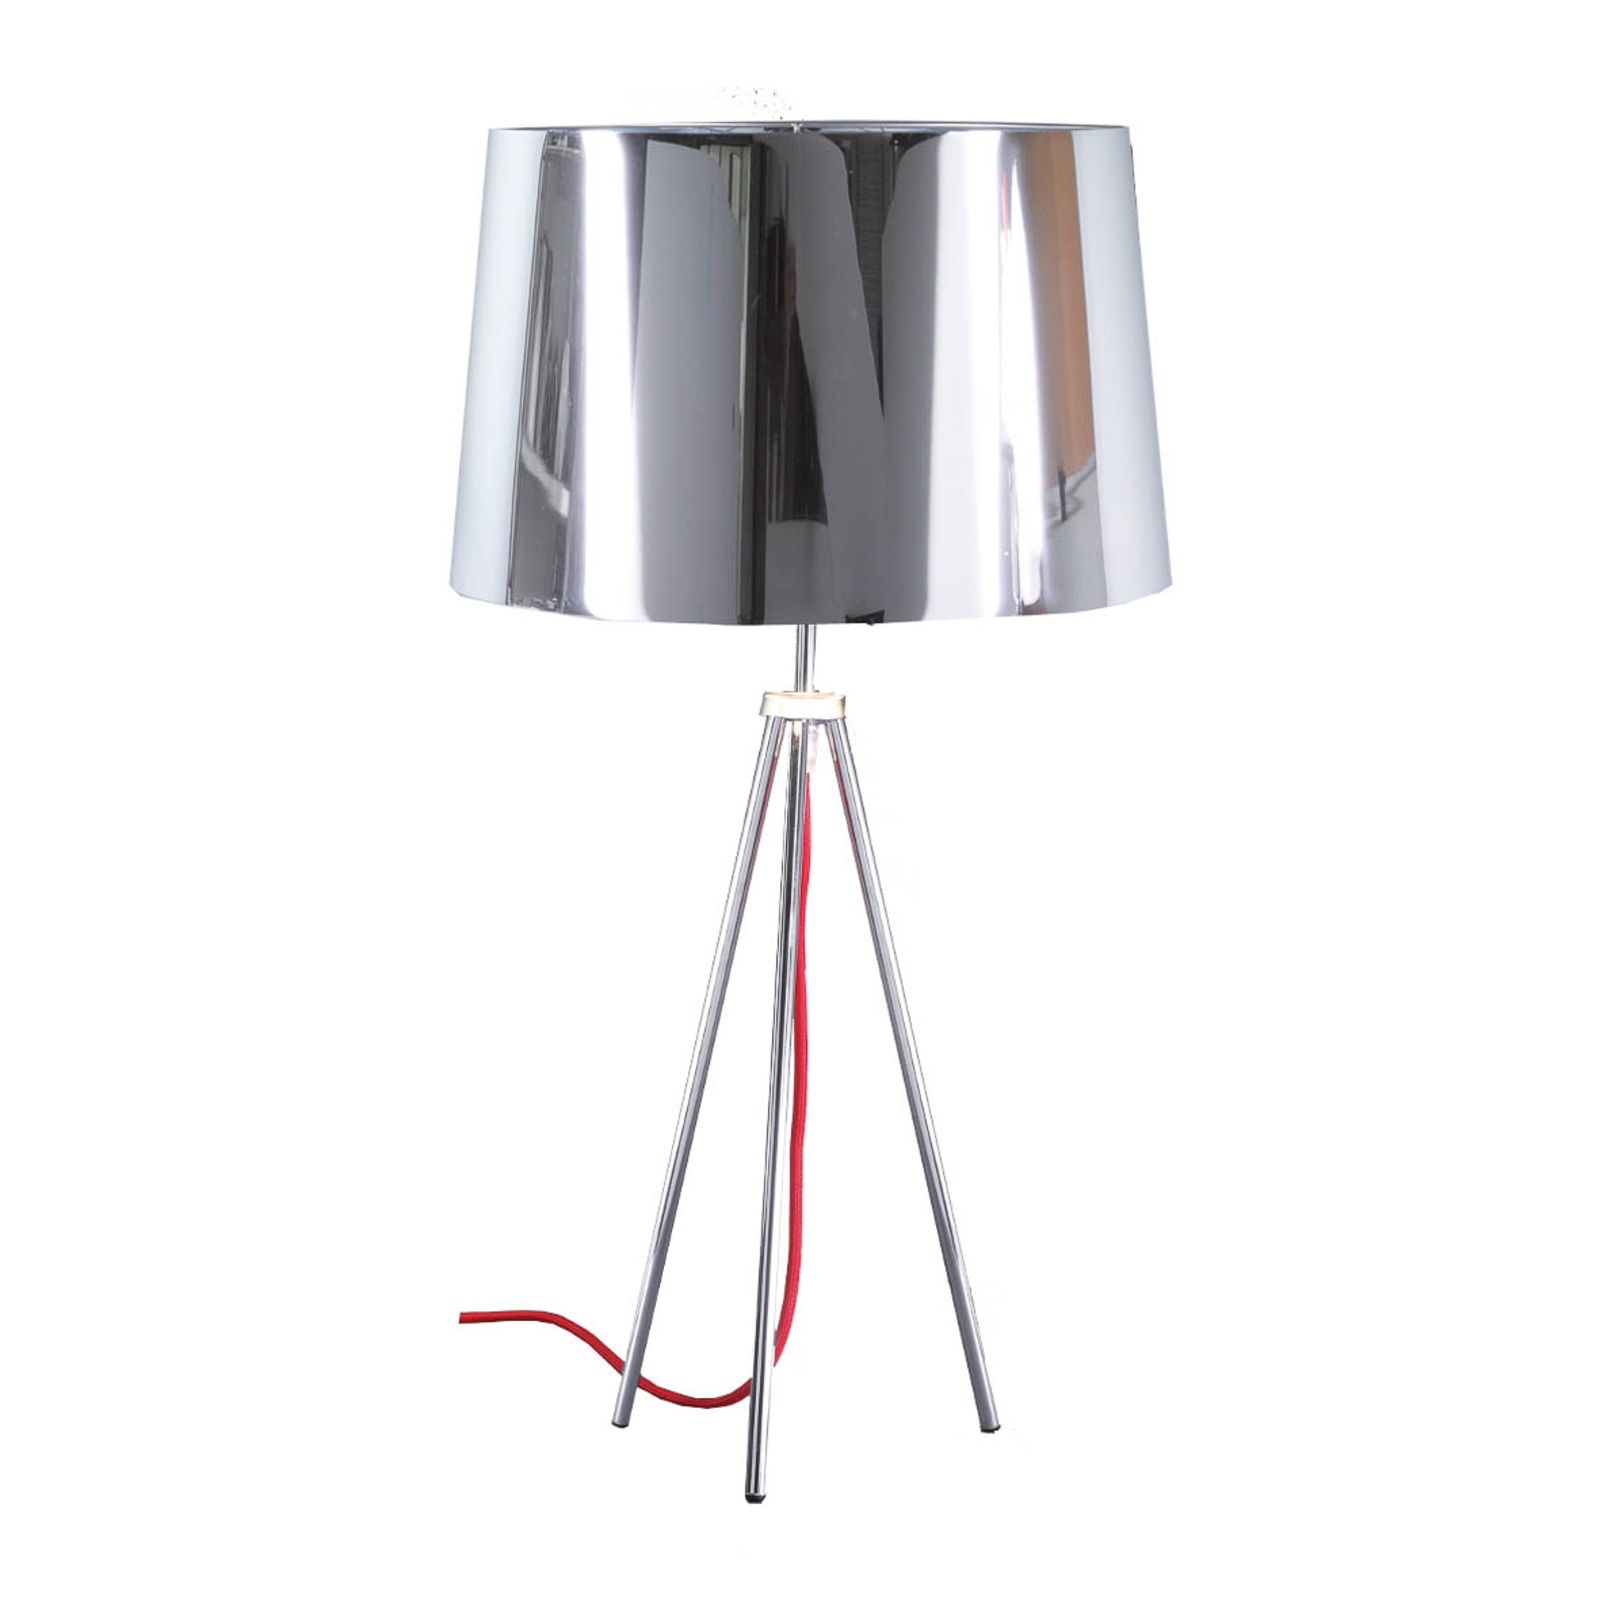 Aluminor Tropic lampa stołowa chrom kabel czerwony